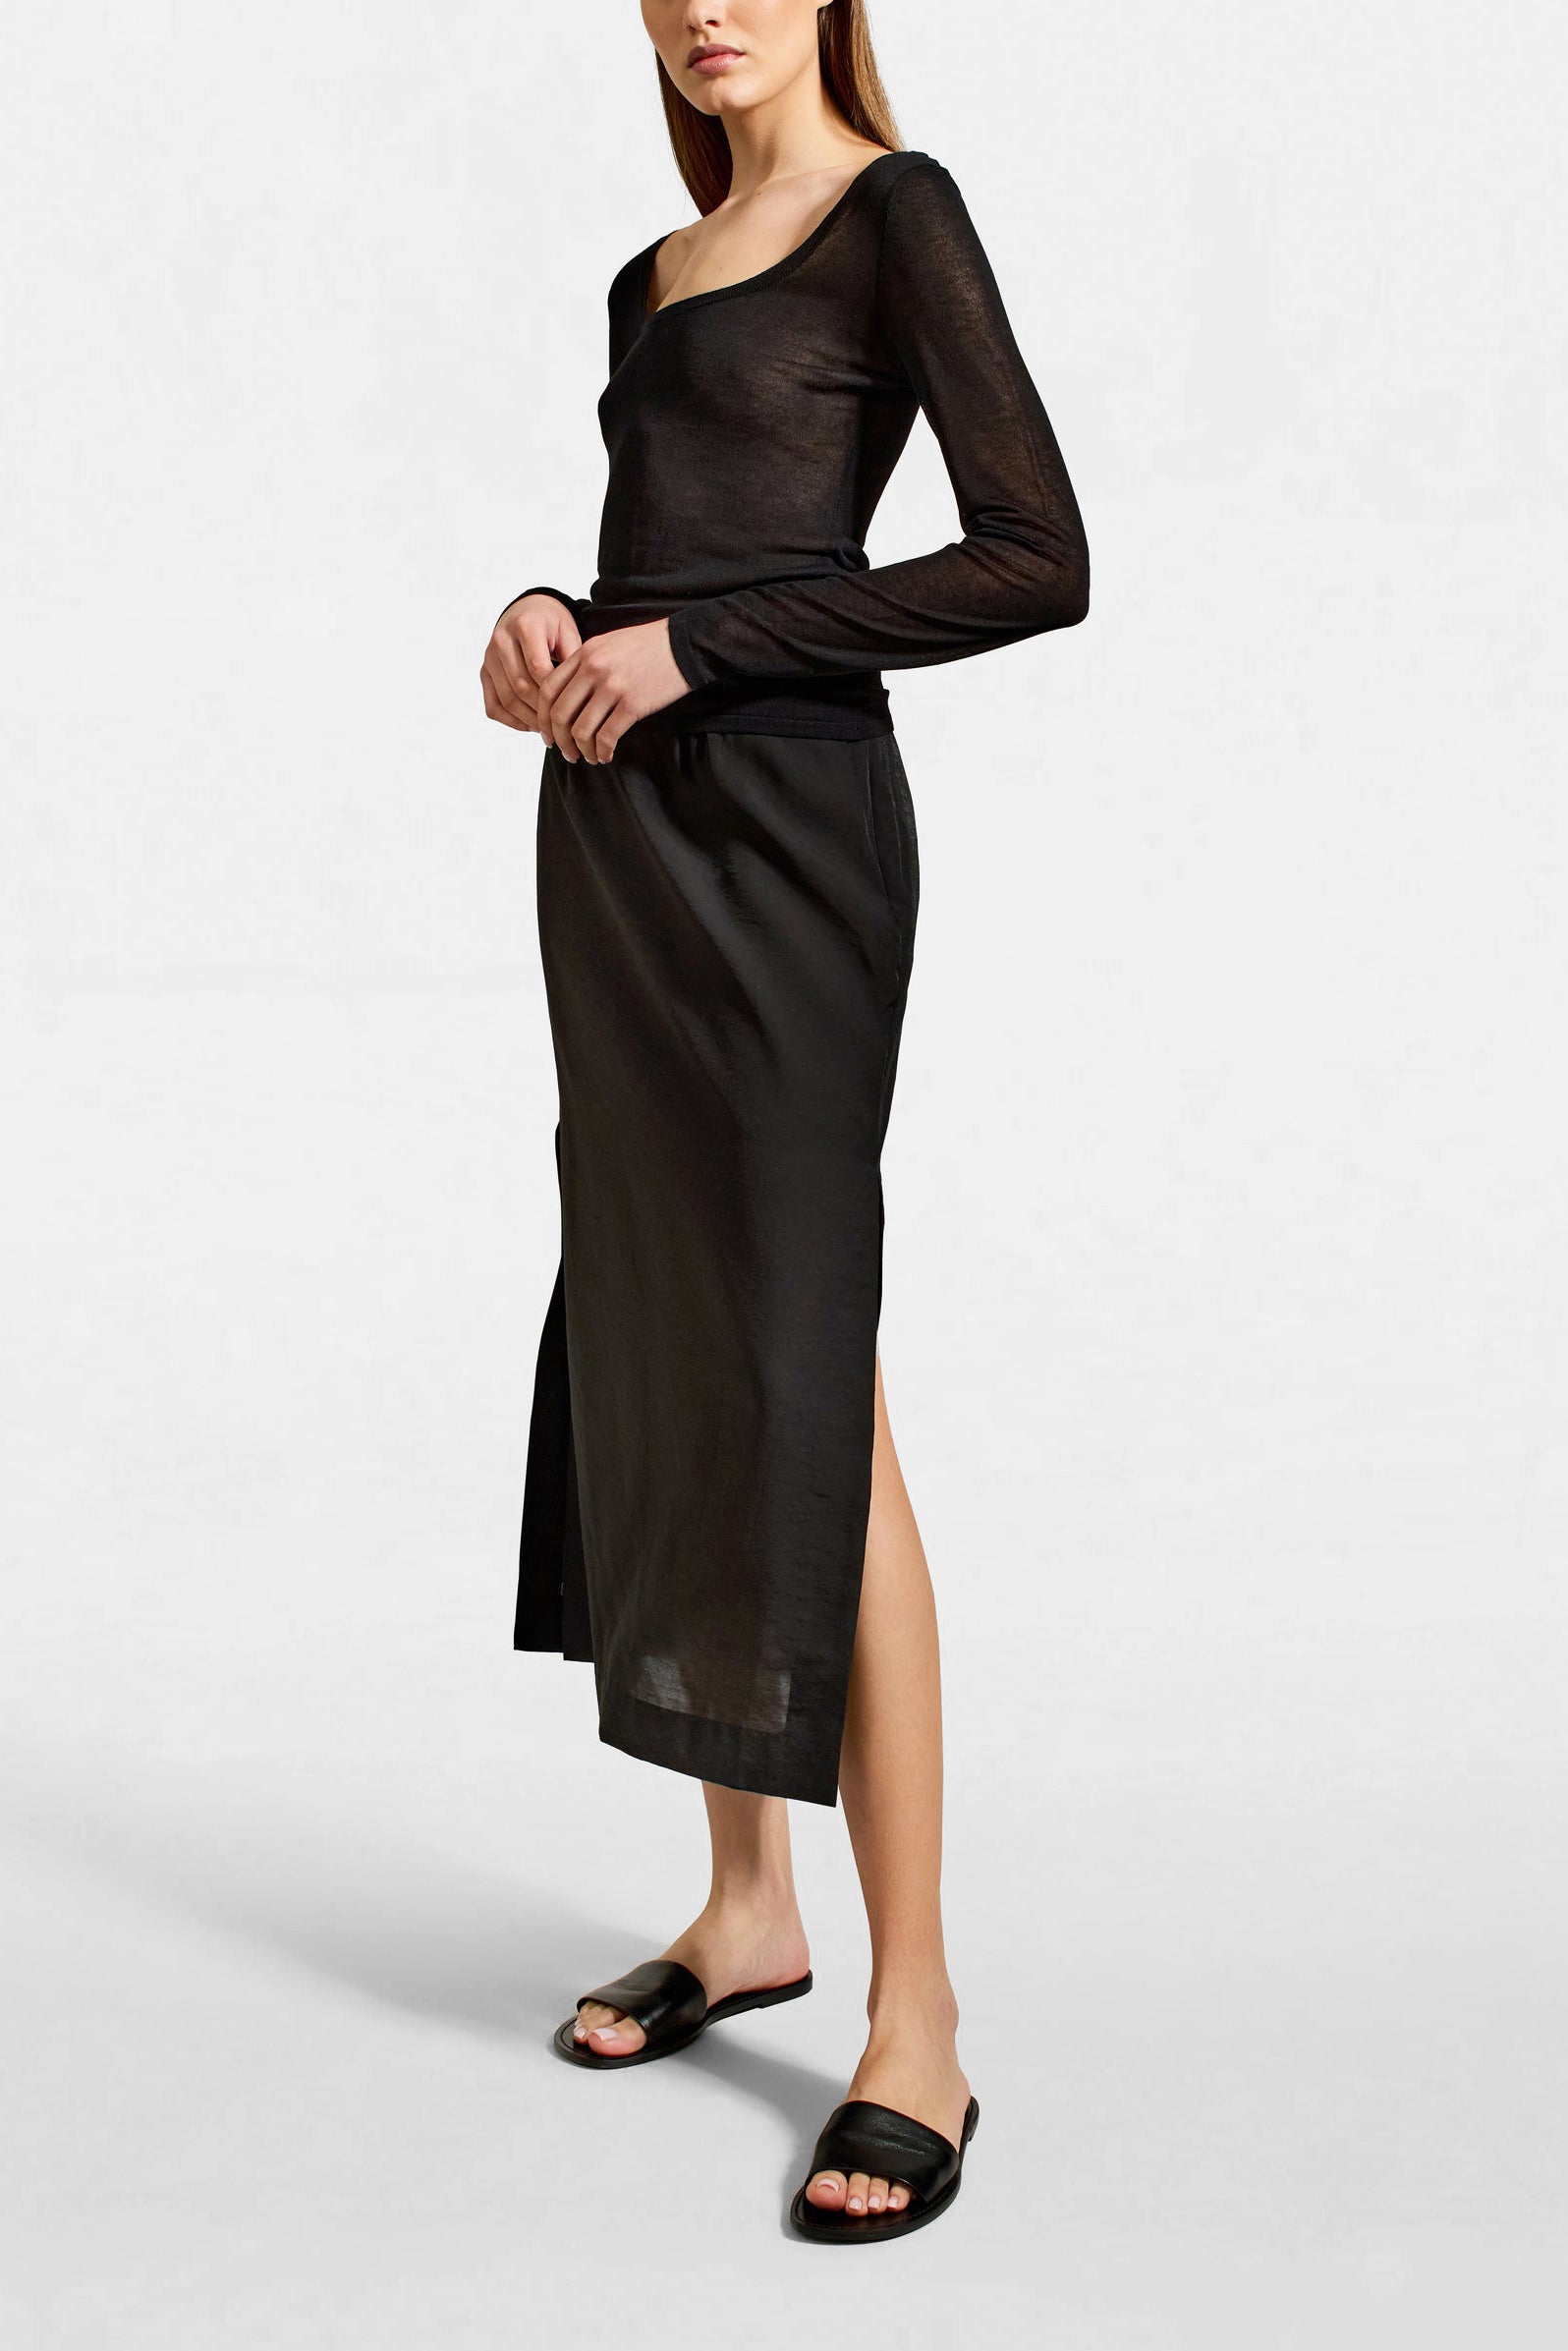 Sasha Sheer Long Sleeve Top in Black by Kallmeyer